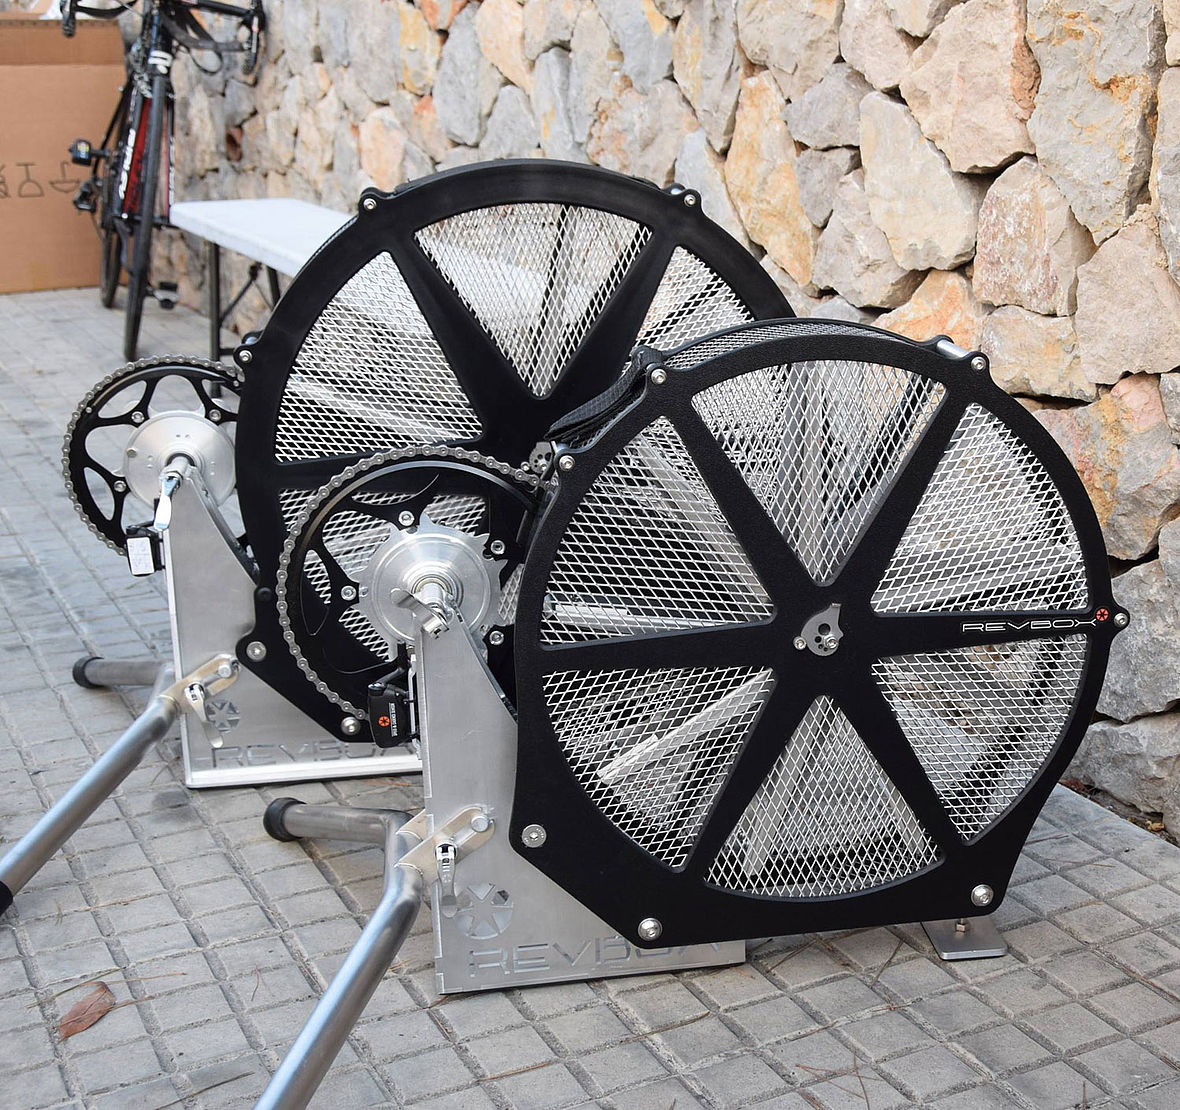 Windmaschine: Beim Revbox Indoor-Radtrainer wird der Widerstand nur durch Windwiderstand erzeugt